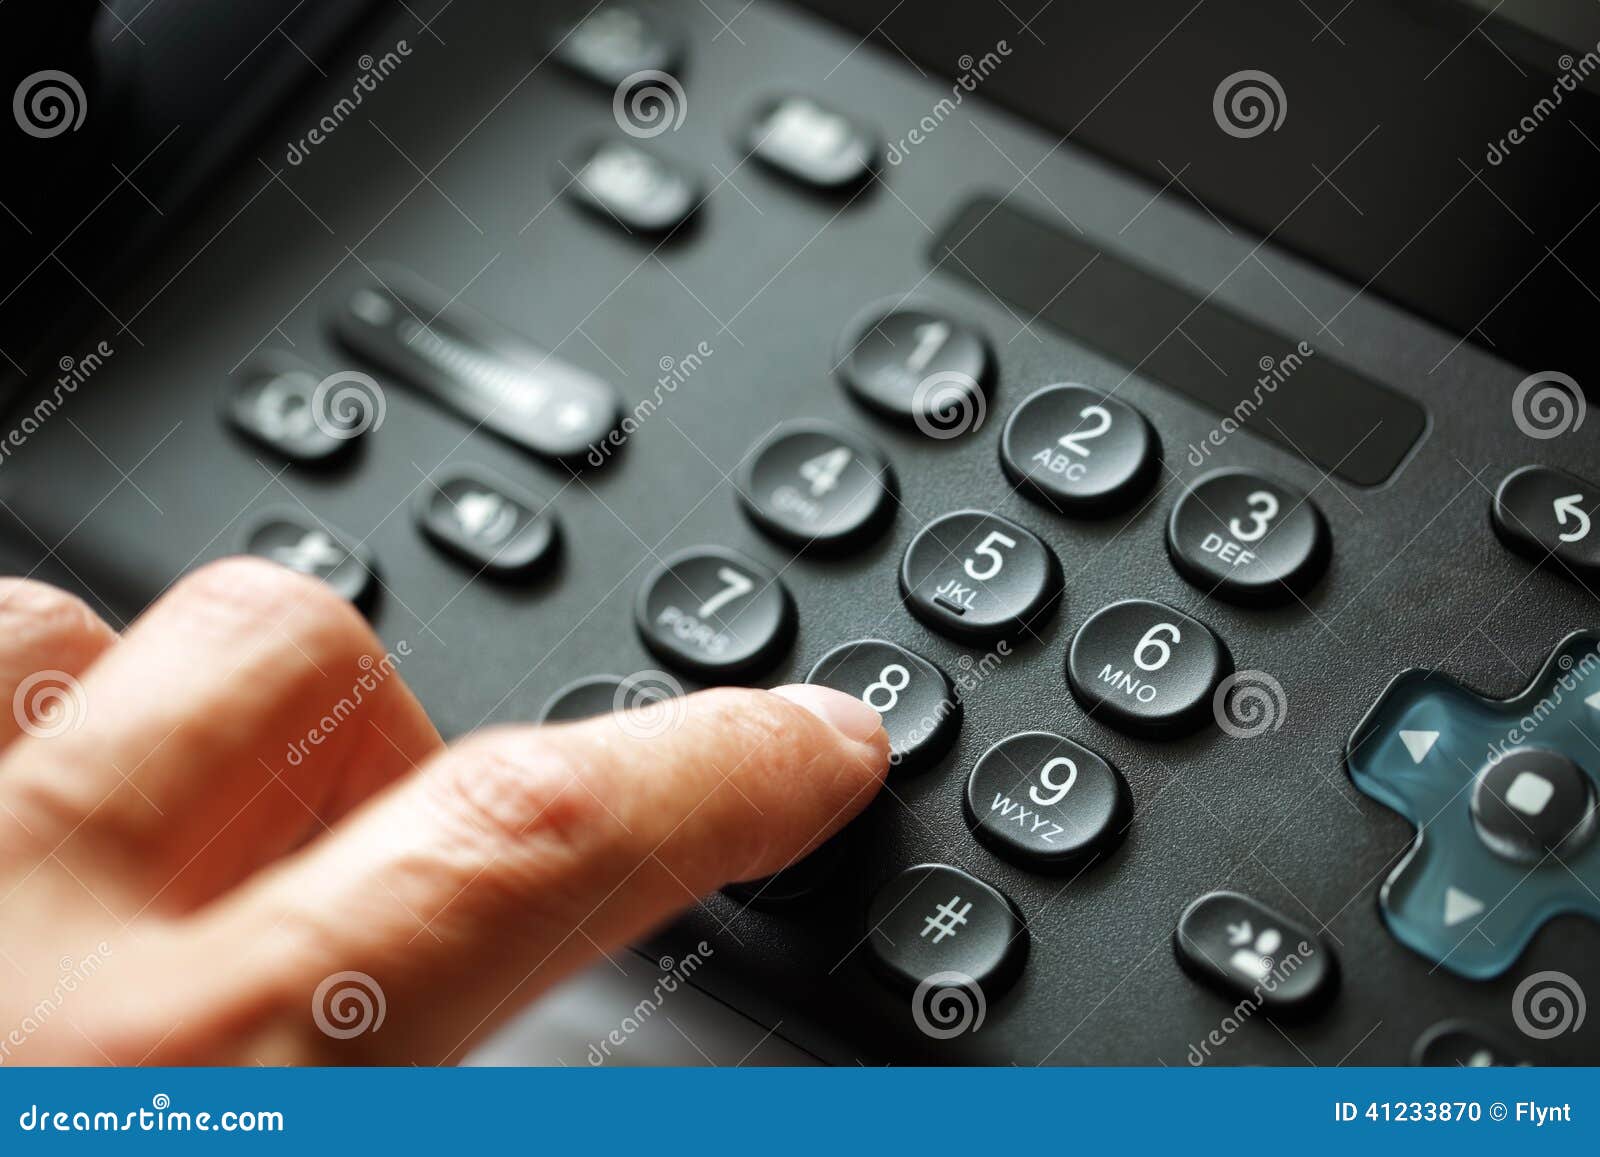 dialing telephone keypad